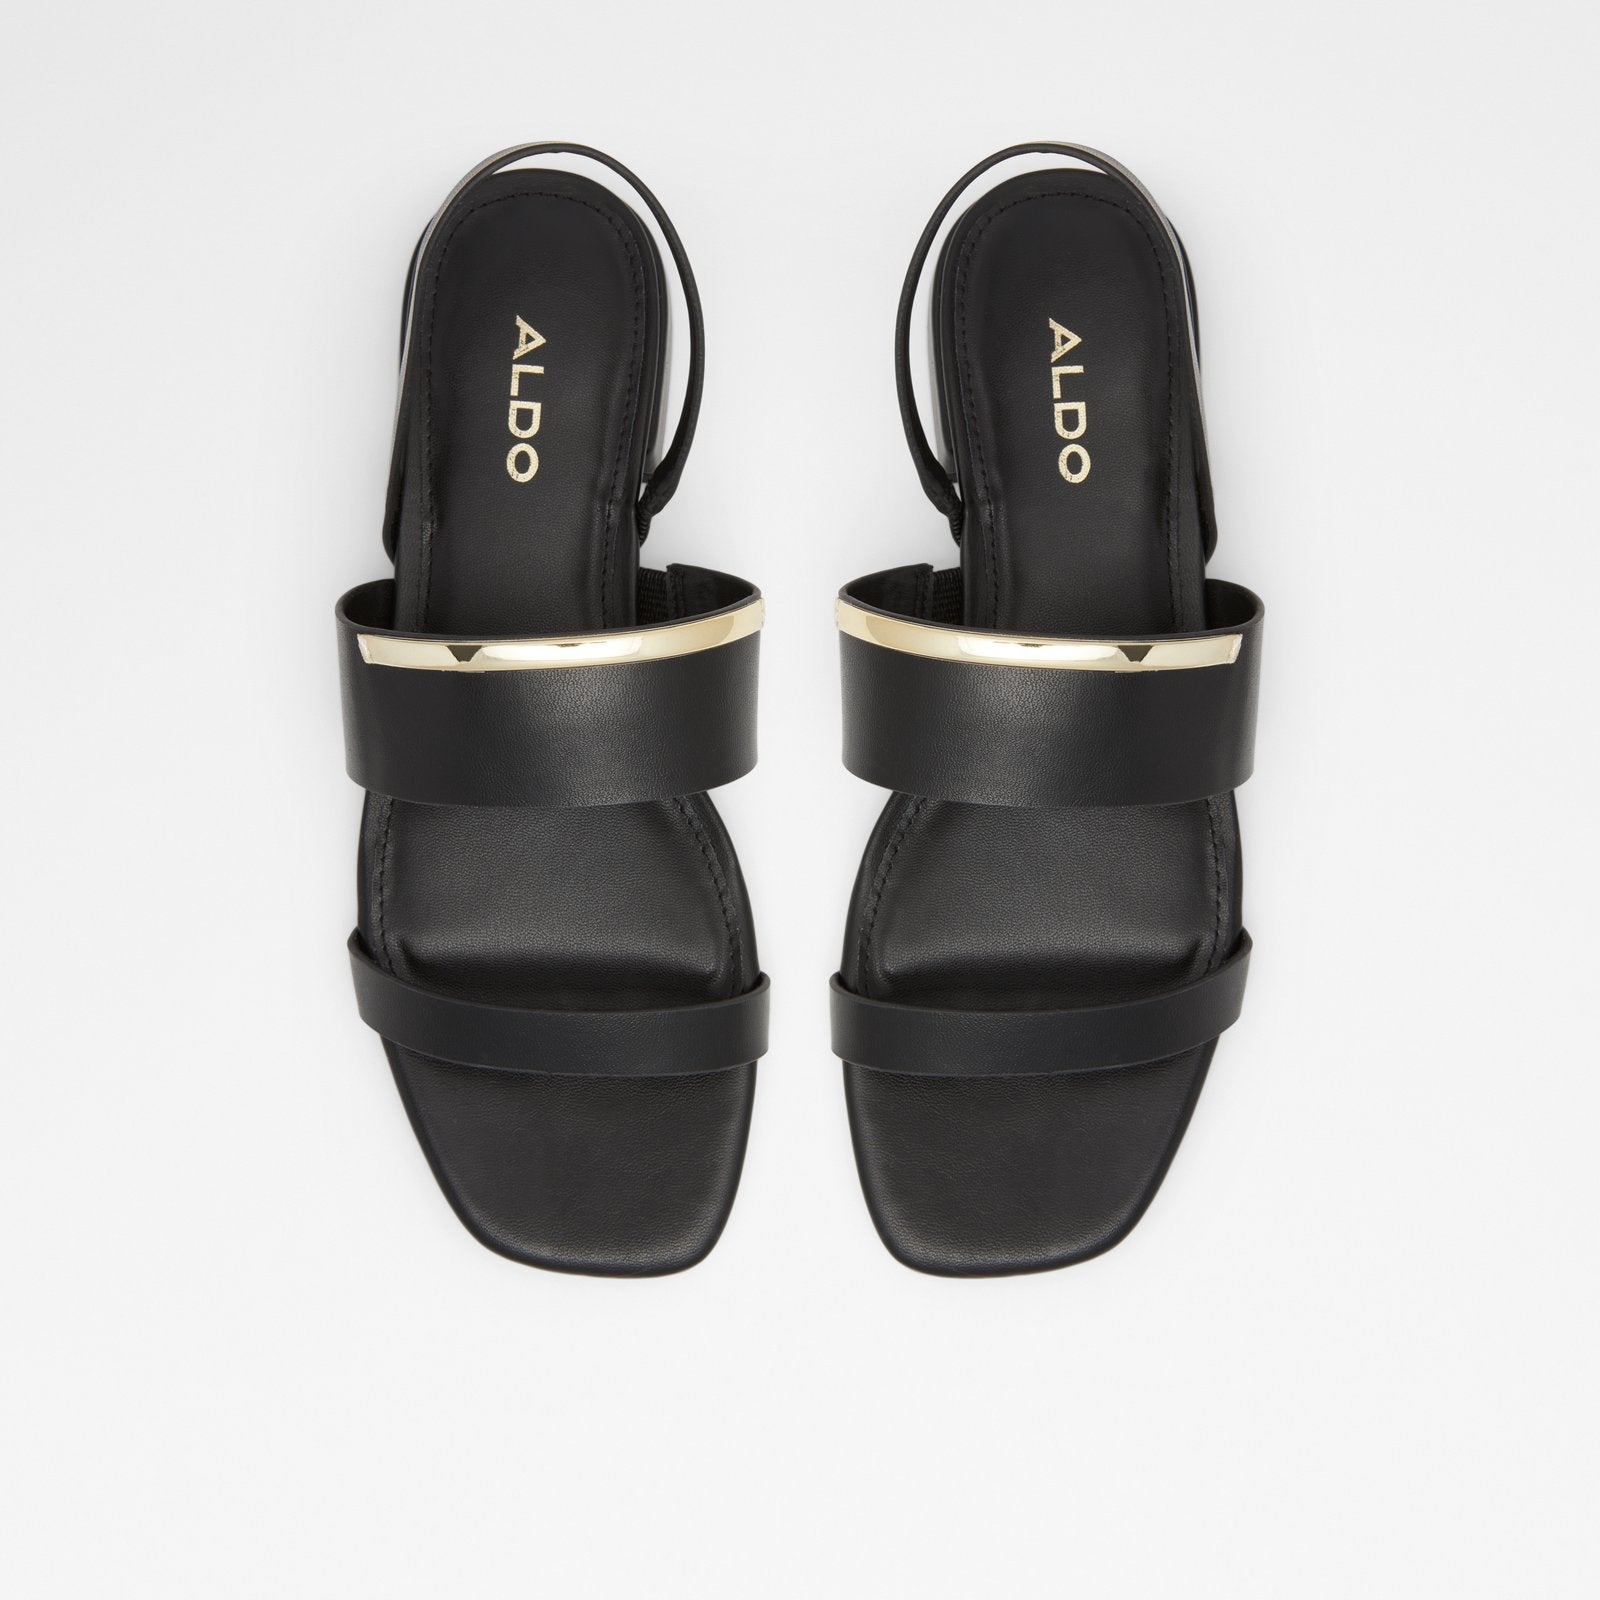 Onigohan Women Shoes - Black - ALDO KSA